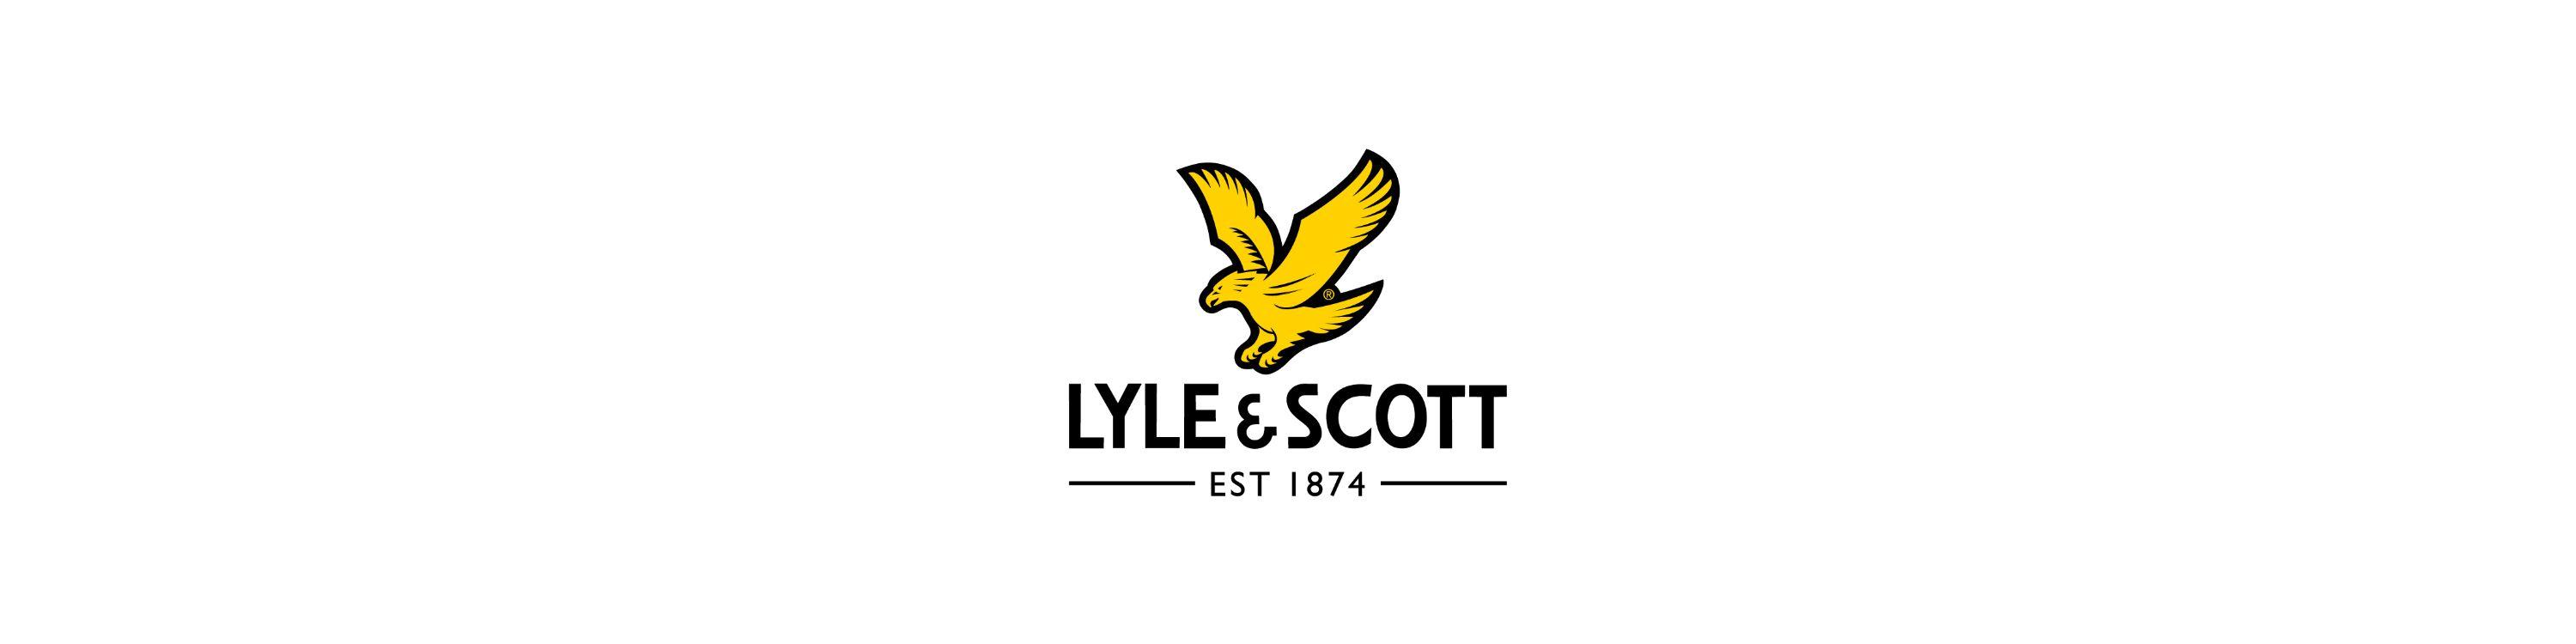 Scott Logo - Amazon.co.uk: Lyle & Scott